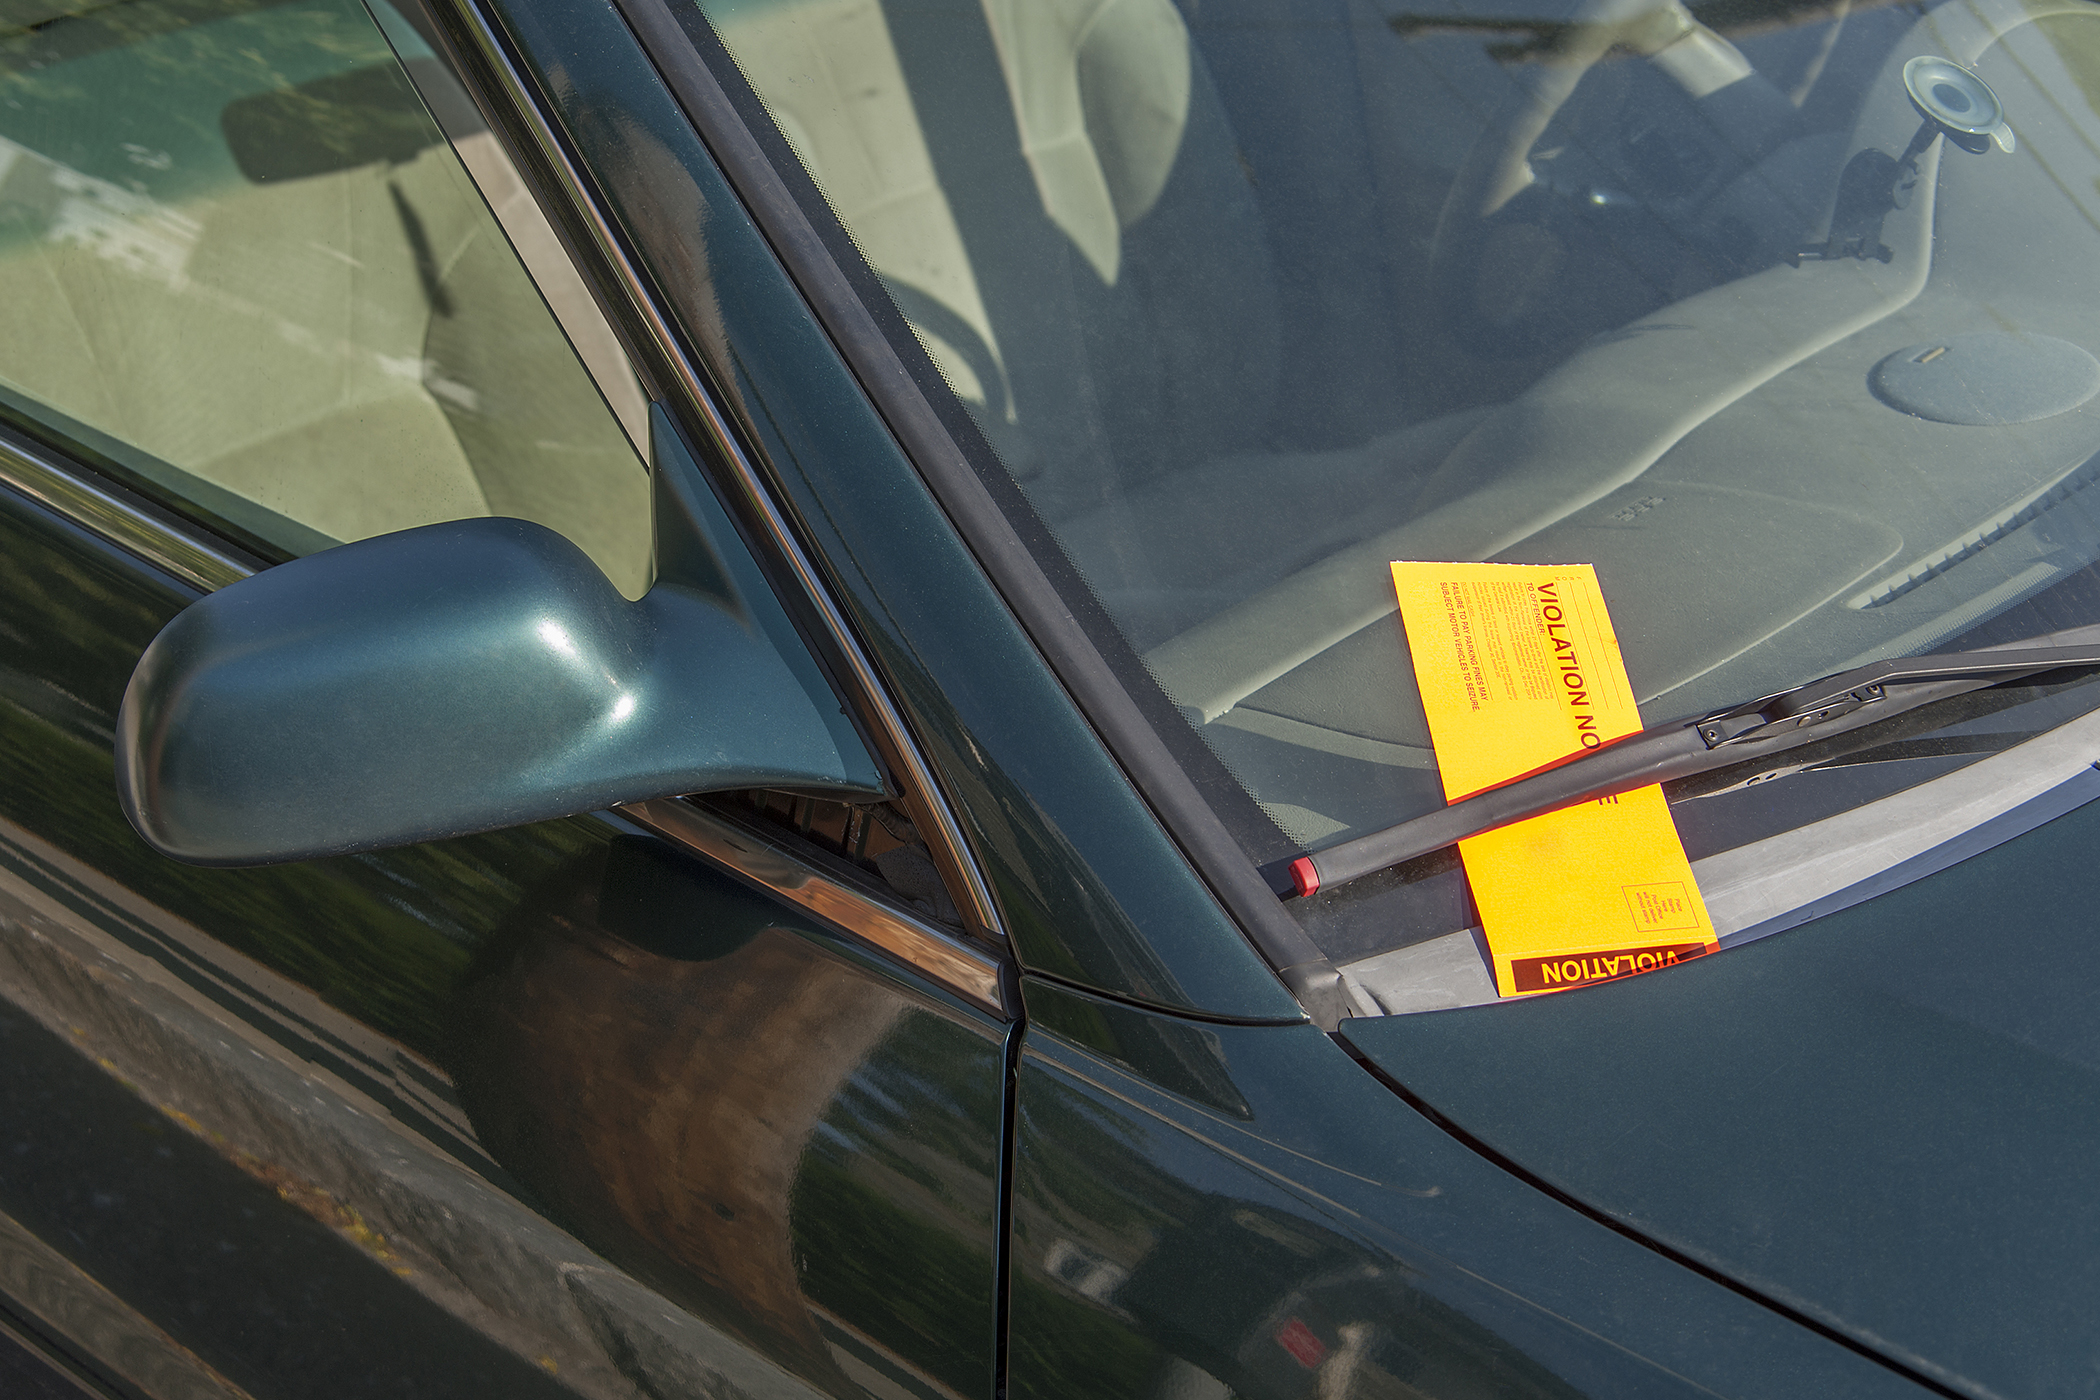 parking ticket under windshield wiper